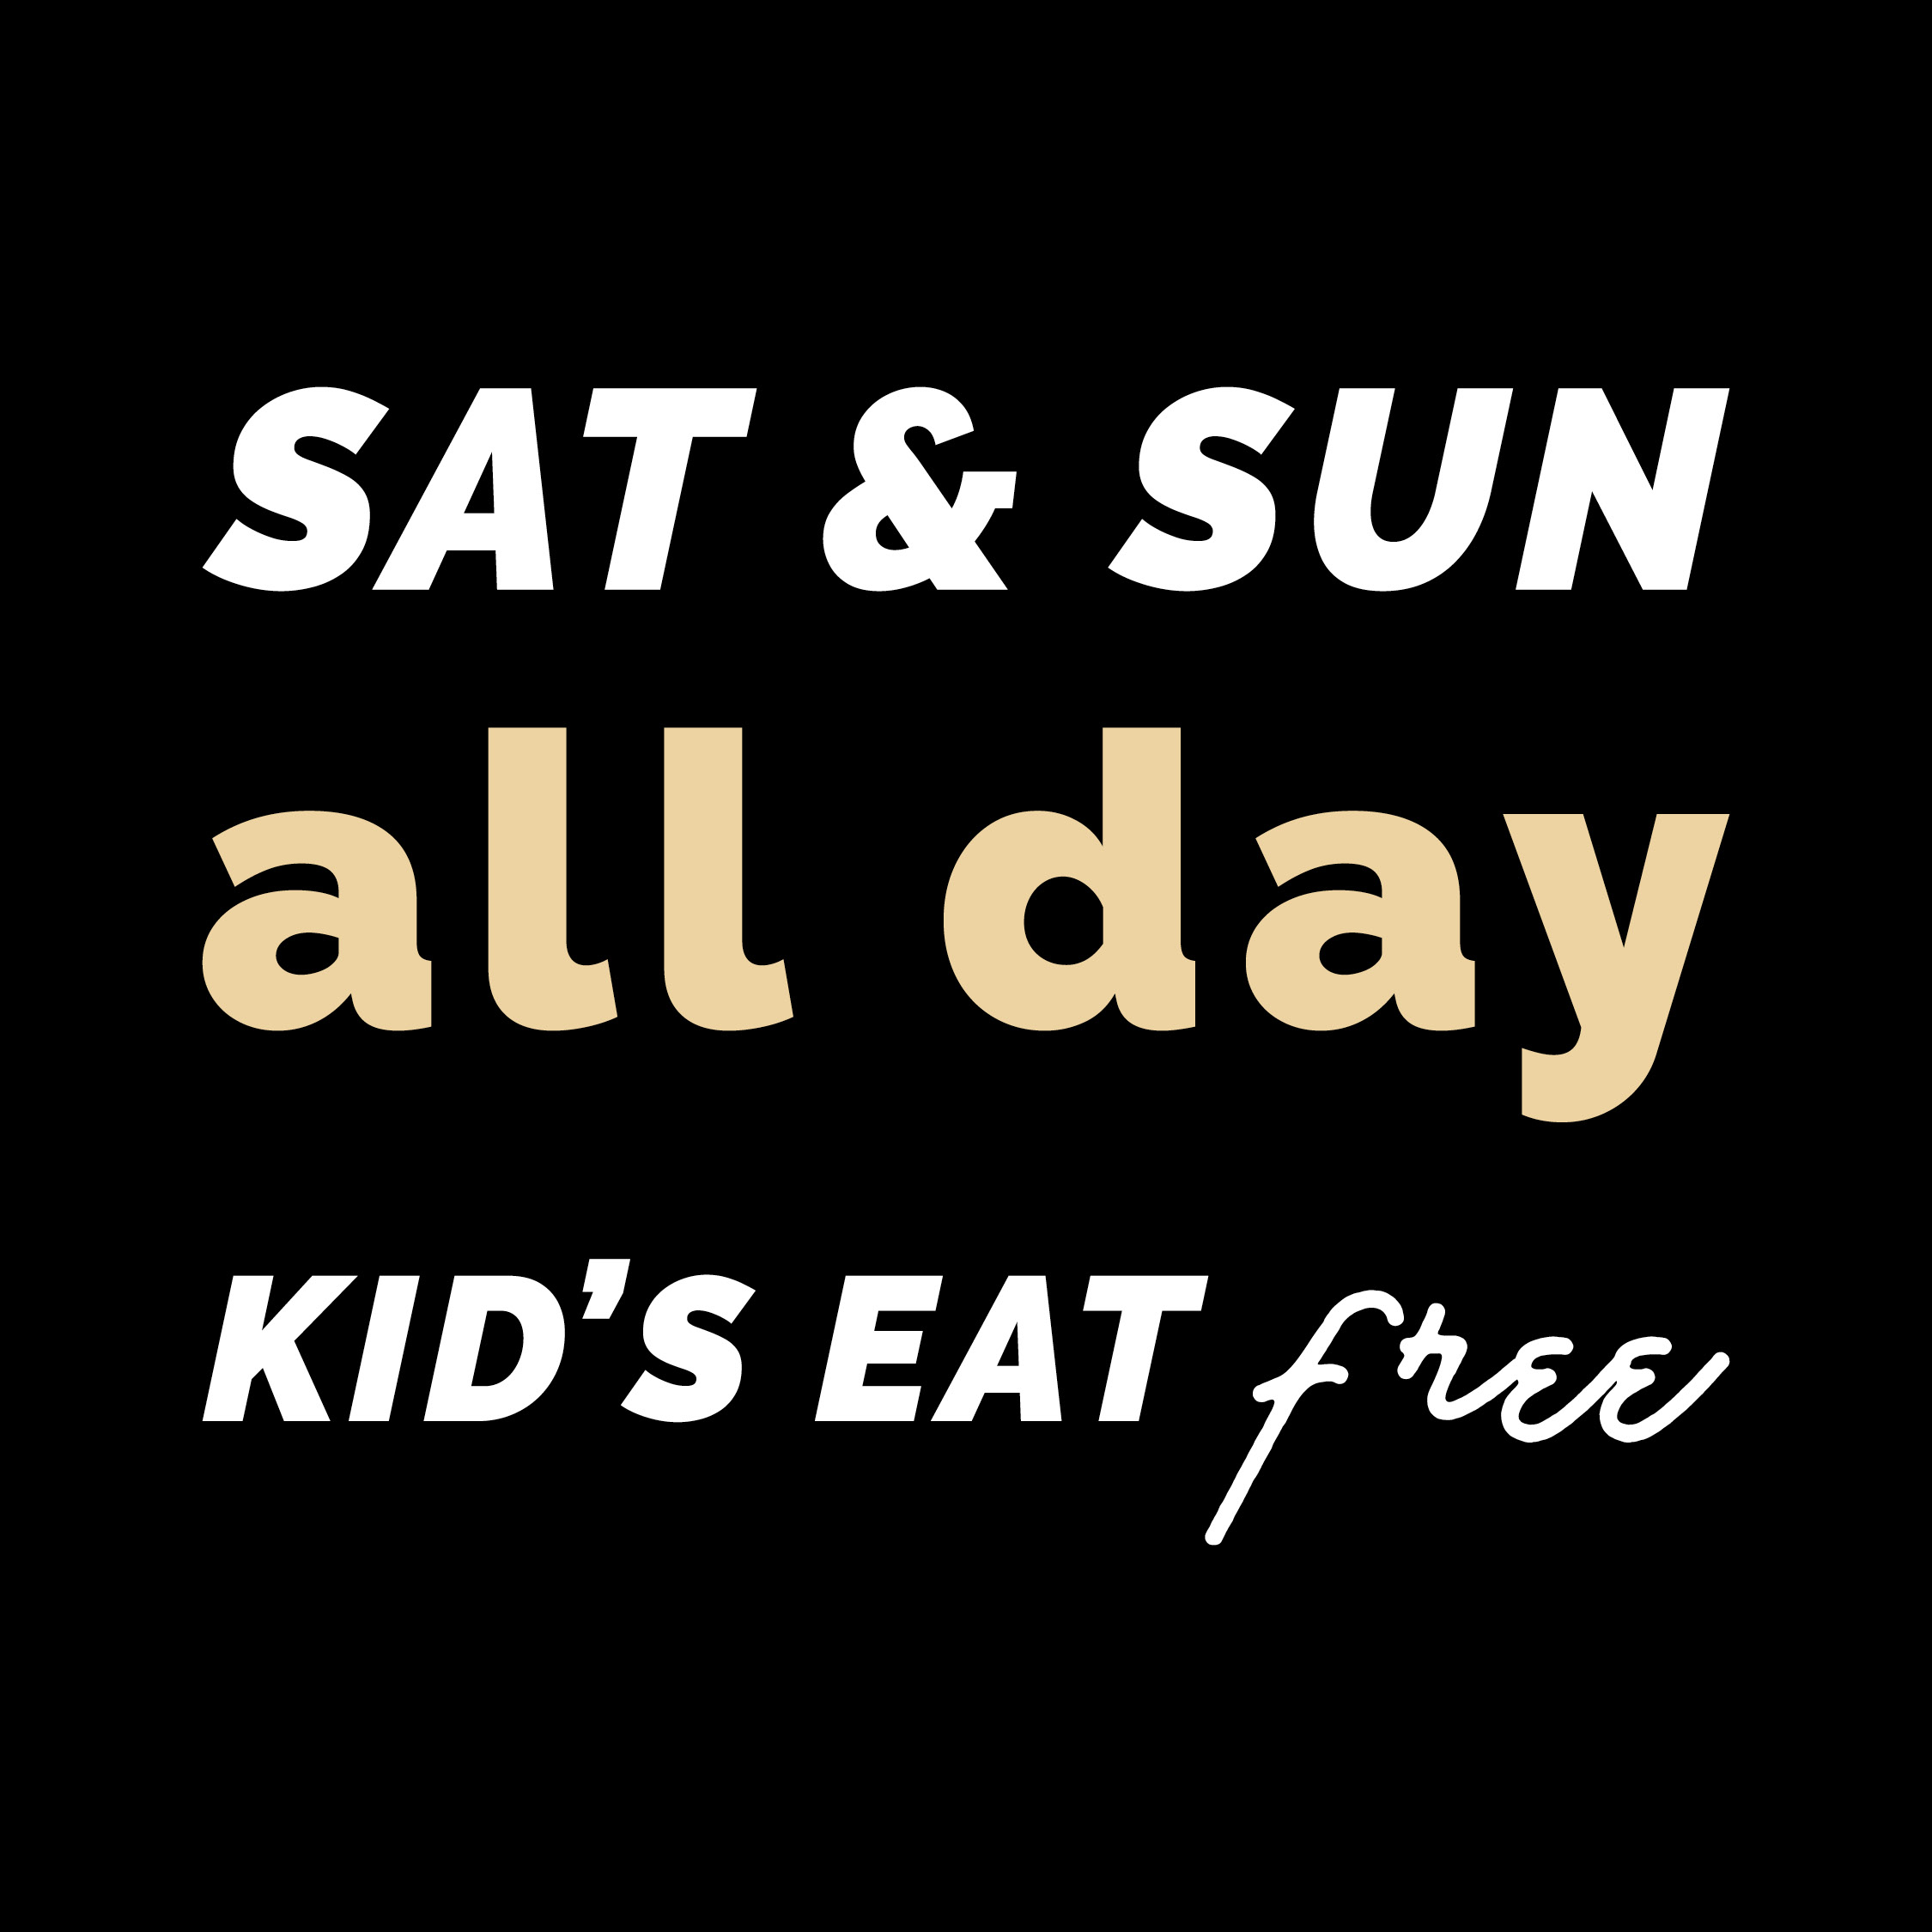 SAT KIDS EAT FREE